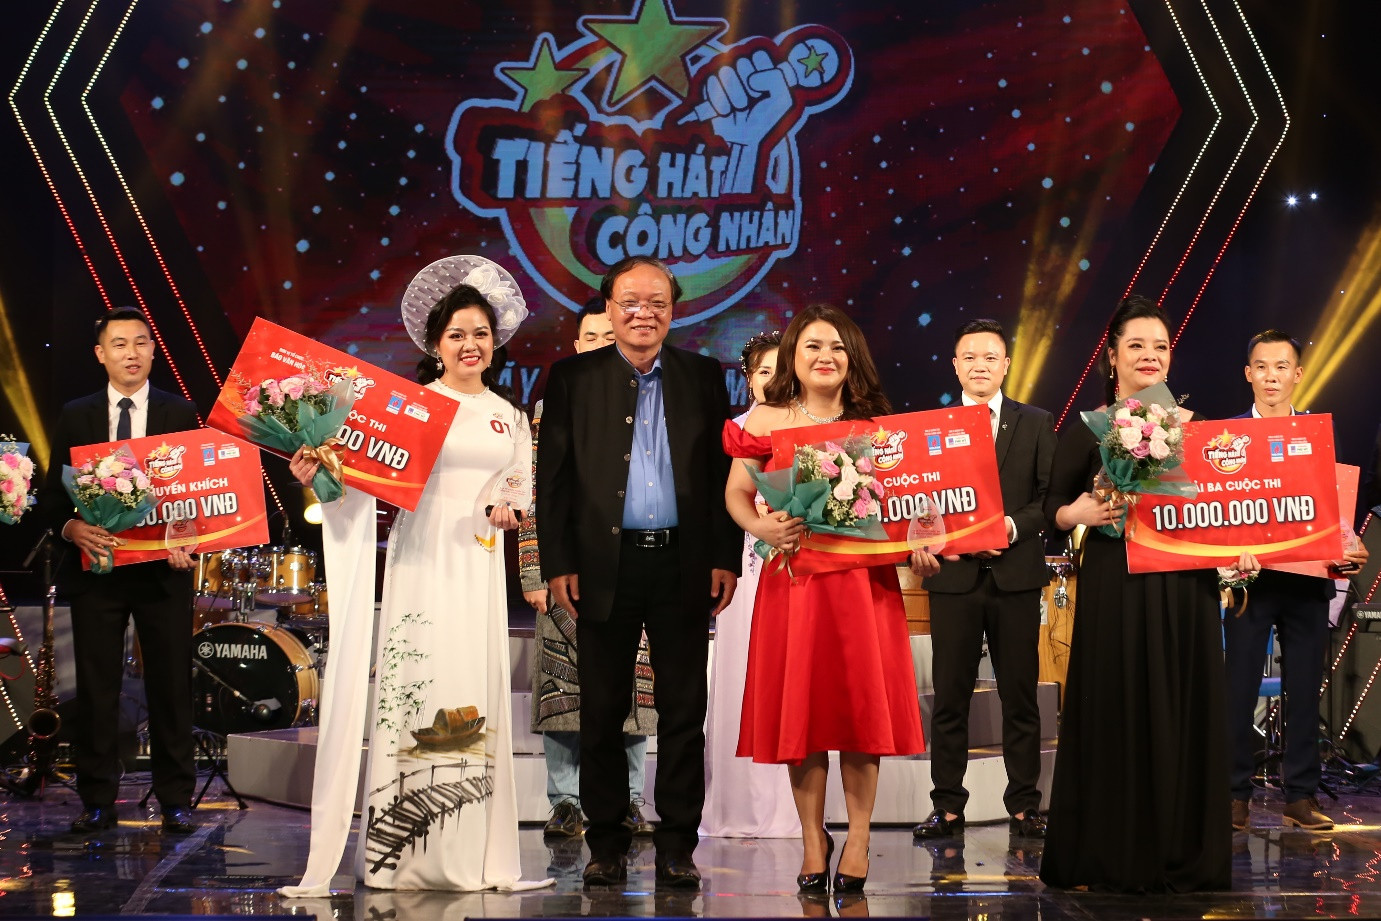 NSND Phạm Ngọc Khôi – Phó Chủ tịch Hội Nhạc sĩ Việt Nam trao giải cho các thí sinh đoạt giải Ba.